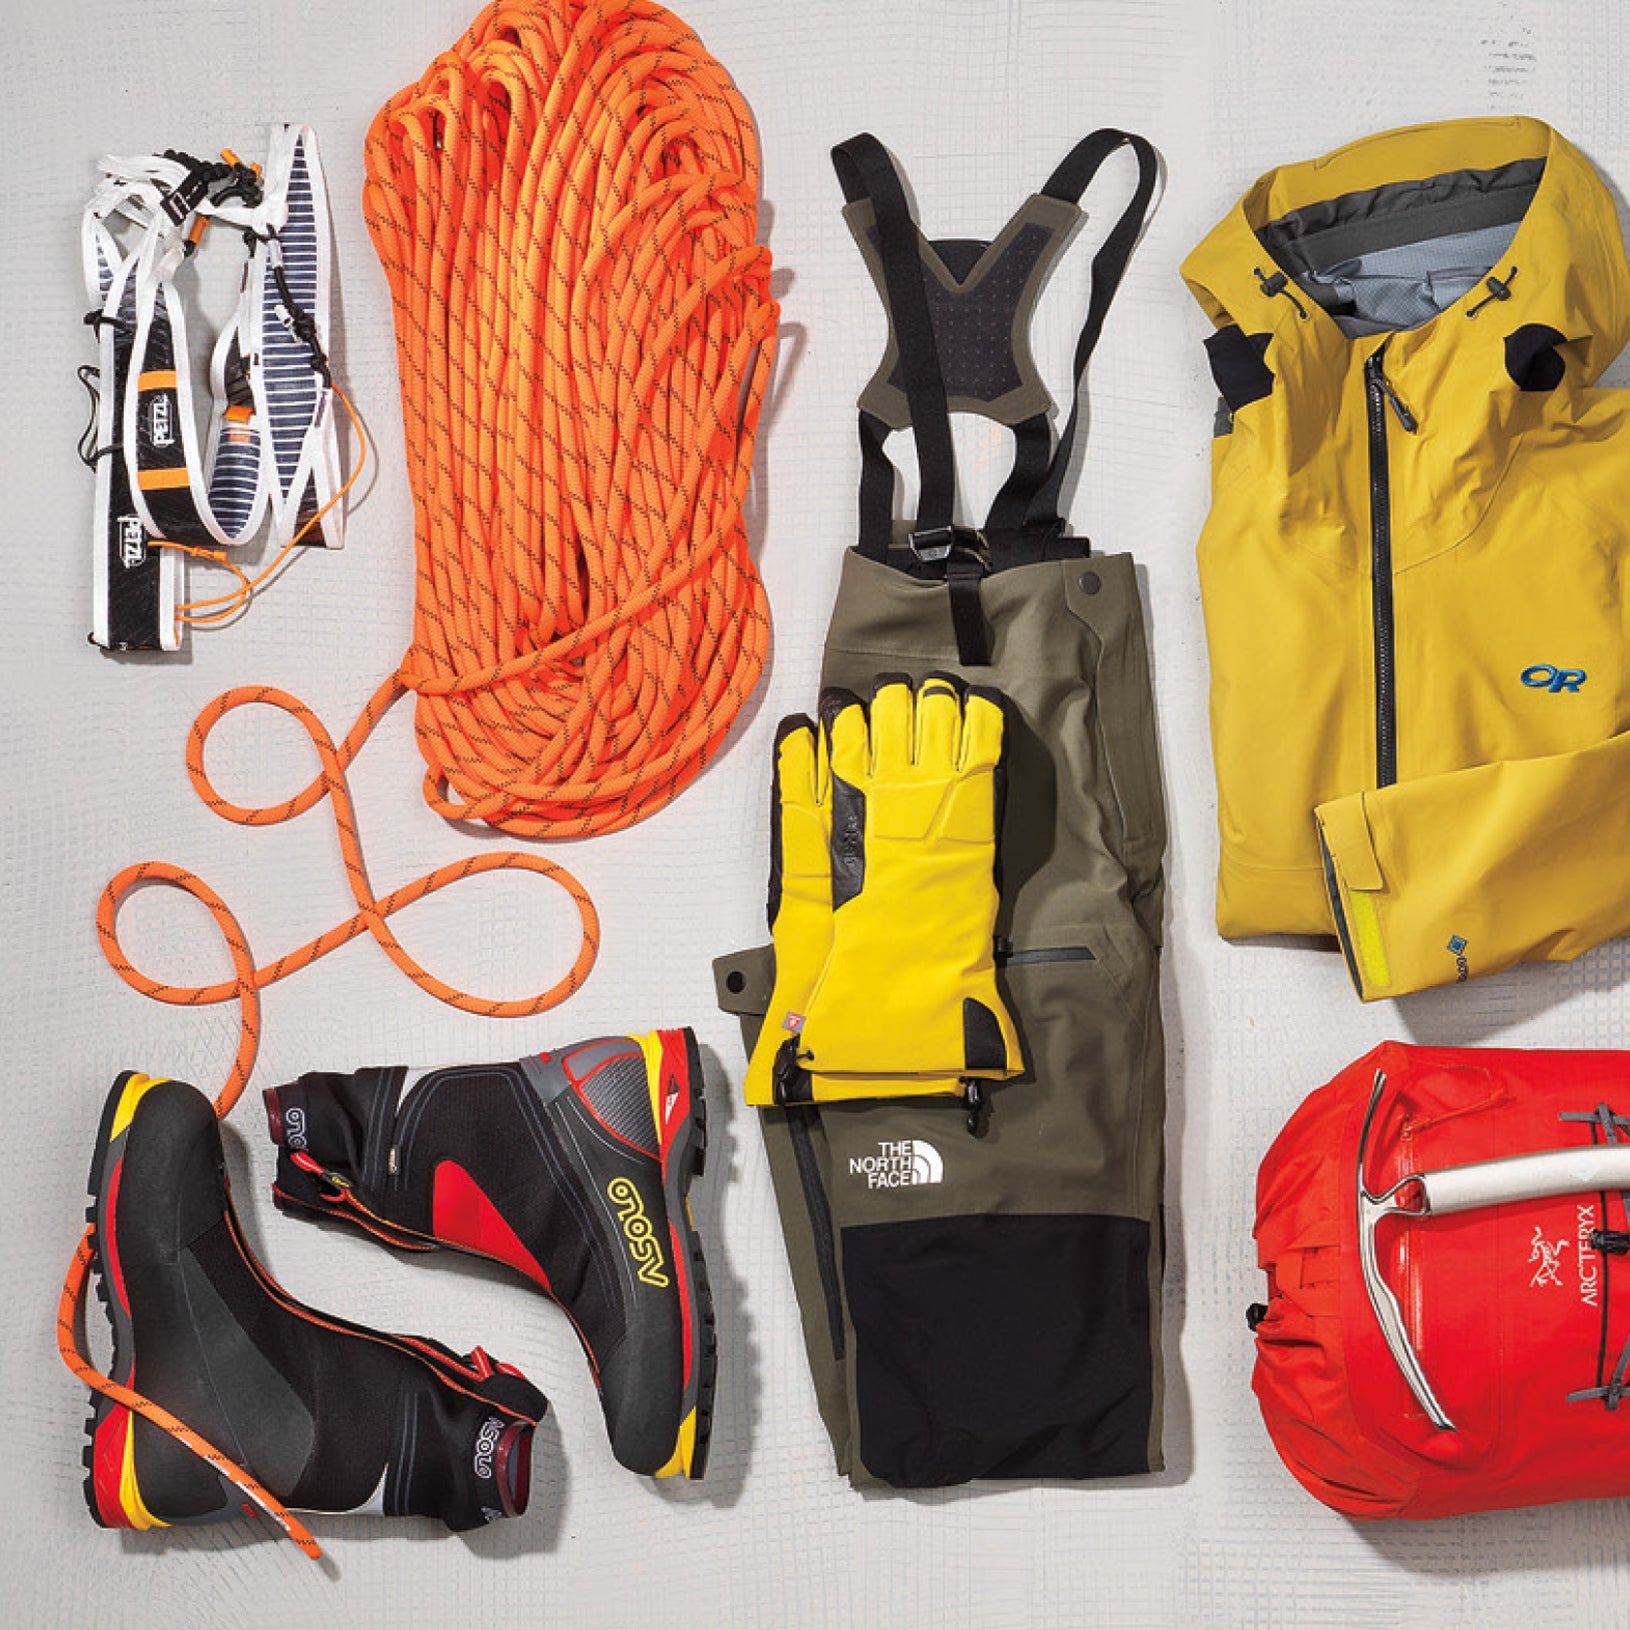 Buy climbing gear online at Casper's Climbing Shop. Lots of brands